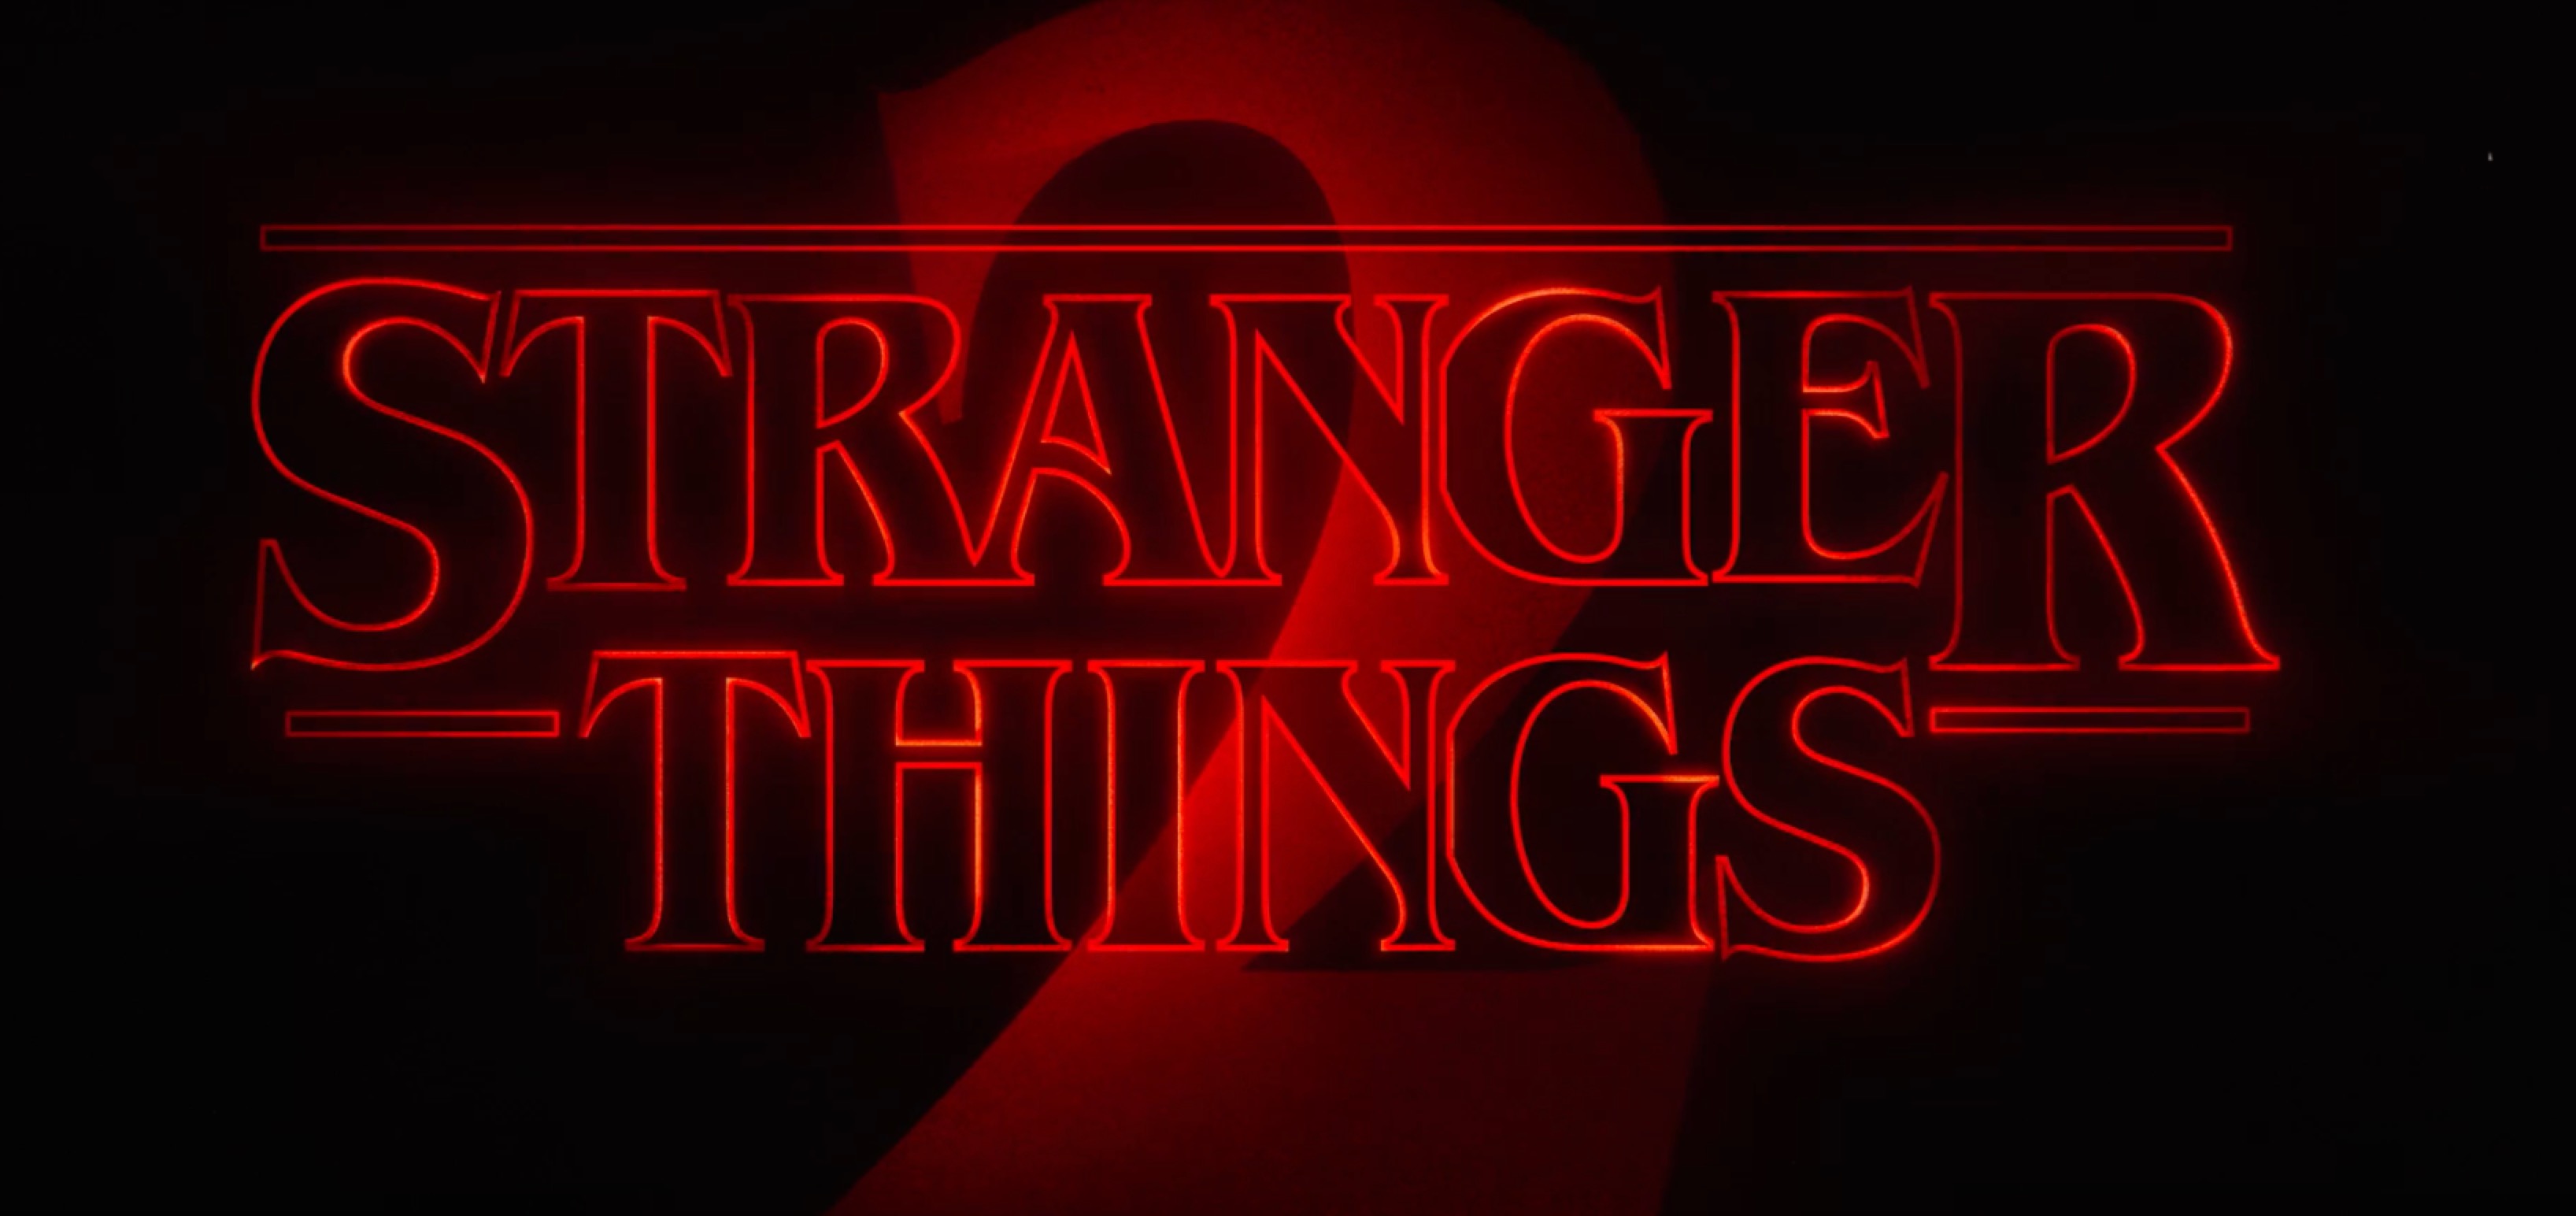 Stranger Things 2 Trailer Breakdown: Comic-Con Trailer Secrets Revealed3272 x 1544